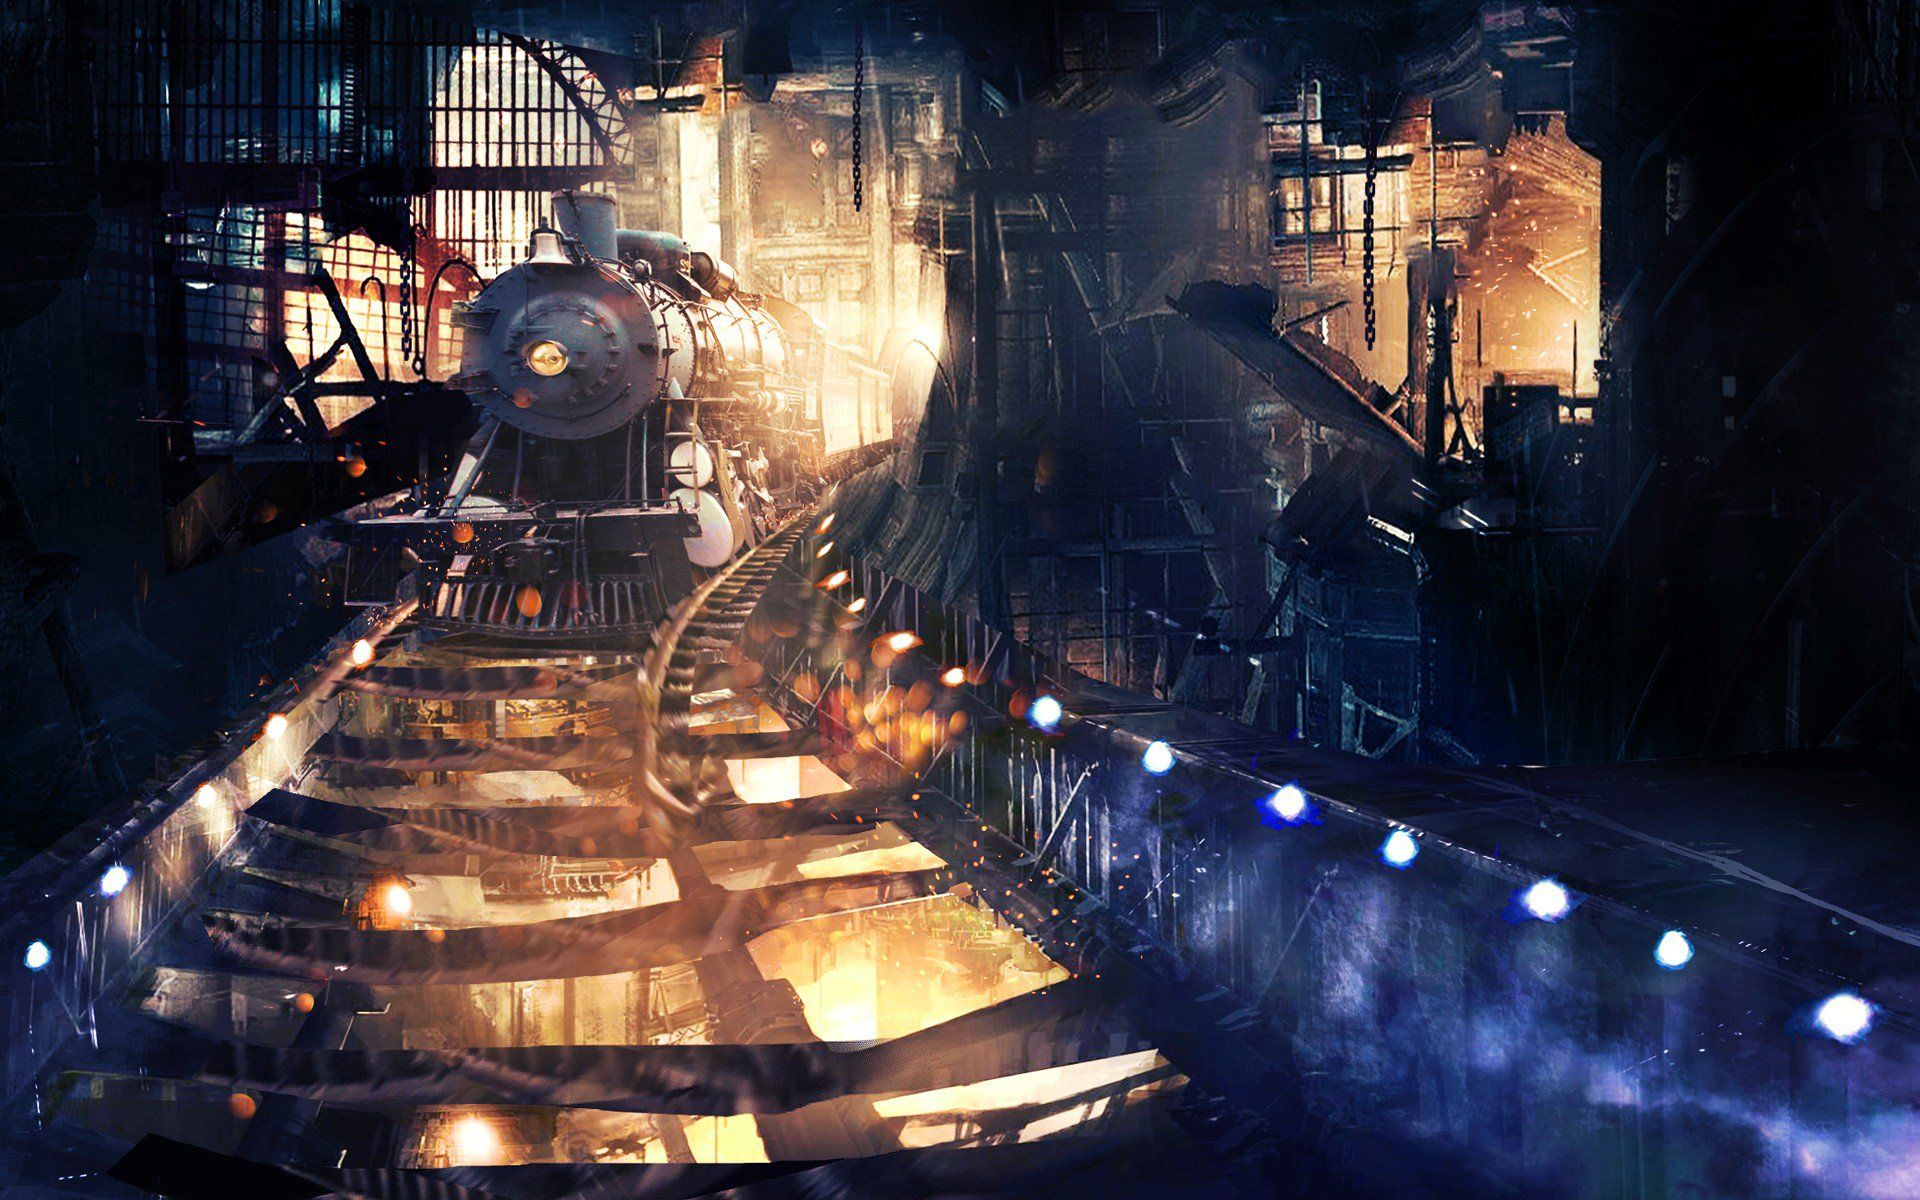  Dampflok Hintergrundbild 1920x1200. Dampflokomotive Hintergrundbilder, Dampflokomotive HD Bilder, Fotos Kostenlos Herunterladen